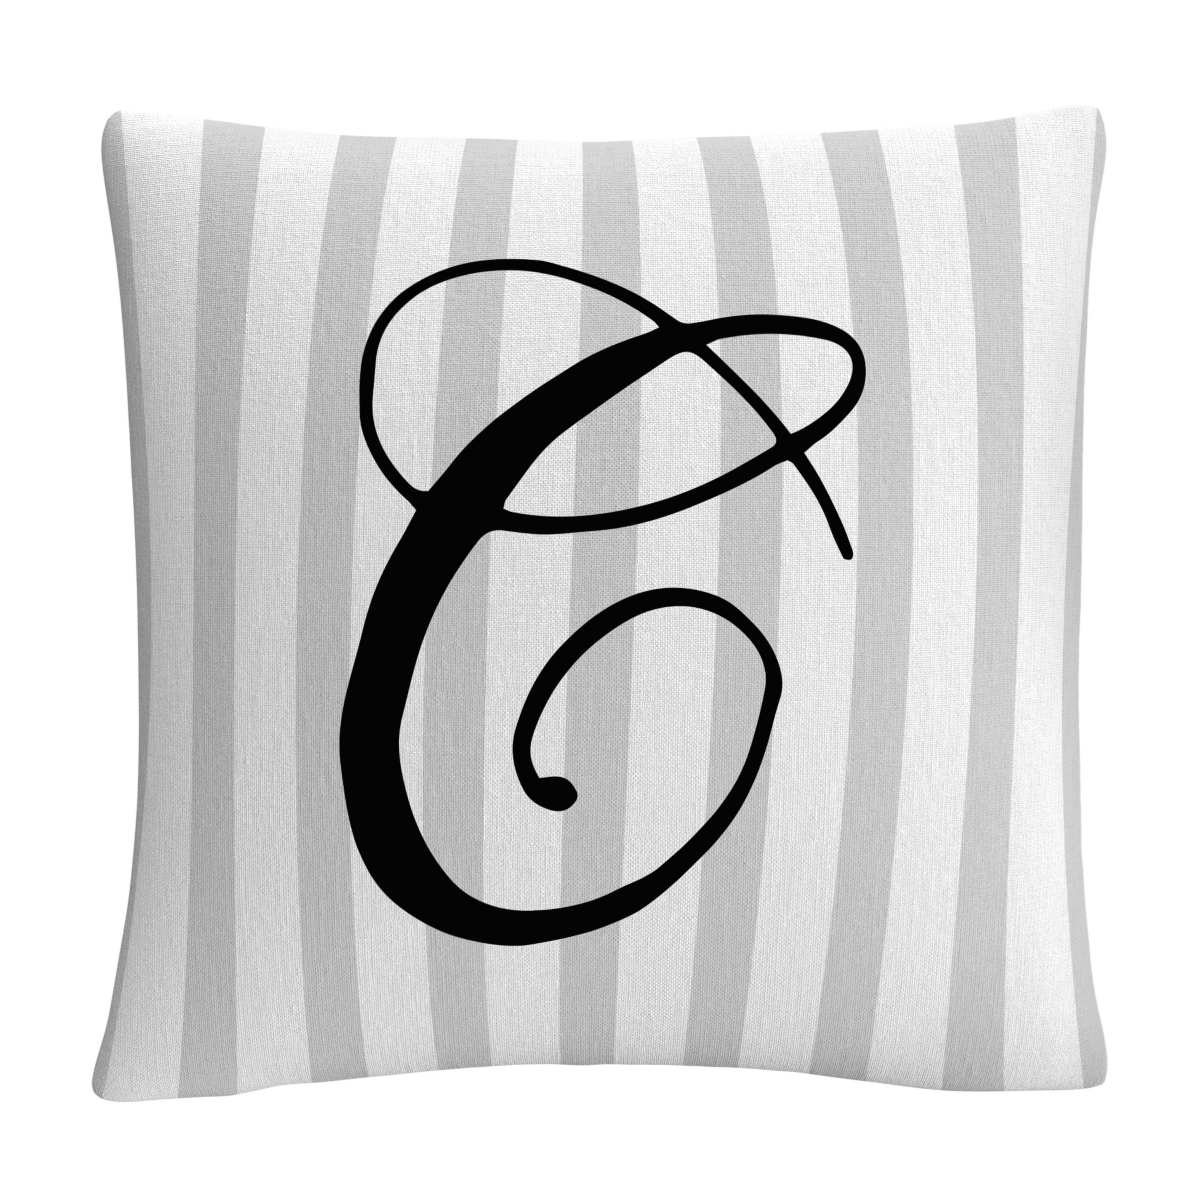 Abc Gray Striped Ornate Letter Script Decorative Pillow, 16 x 16